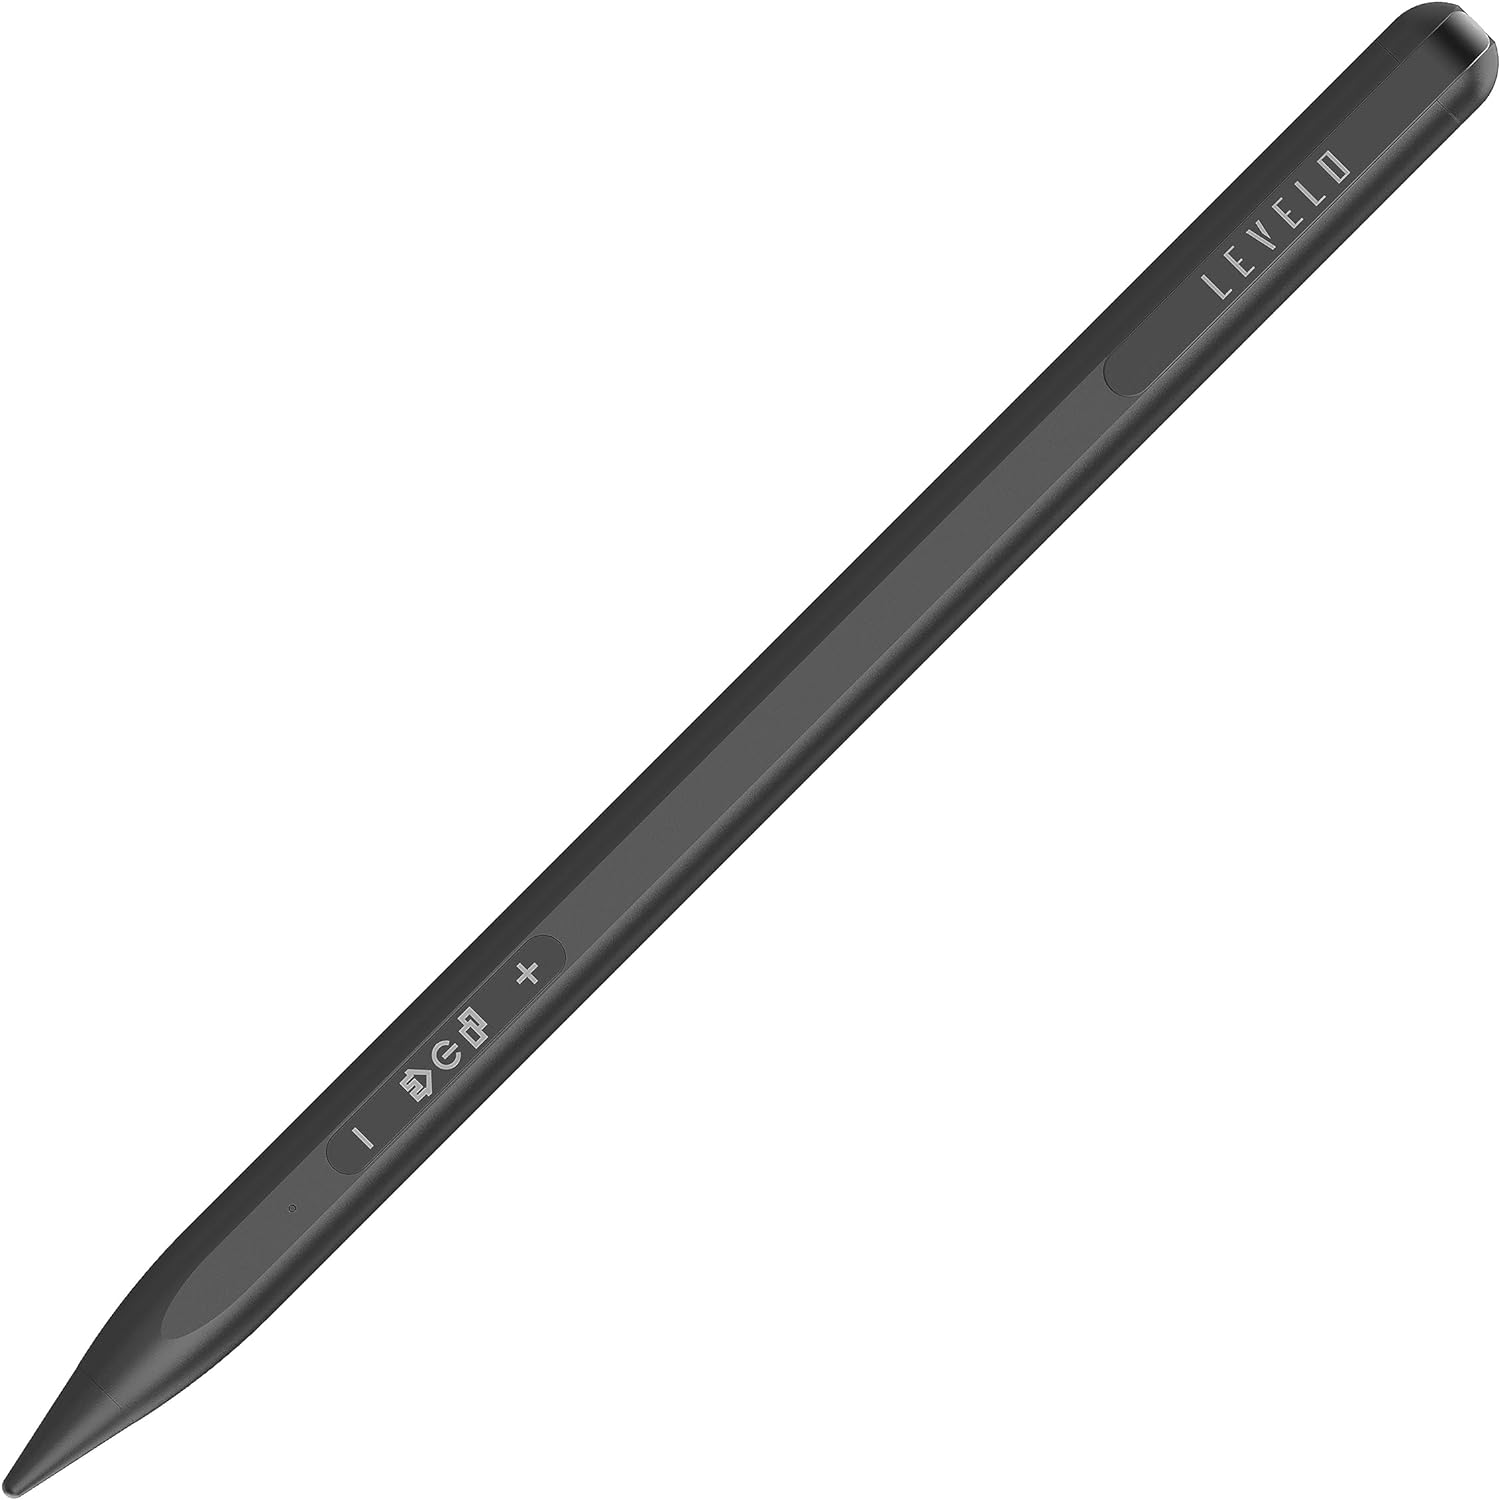 Levelo Skywrite Versa Stylus Pen for iPad